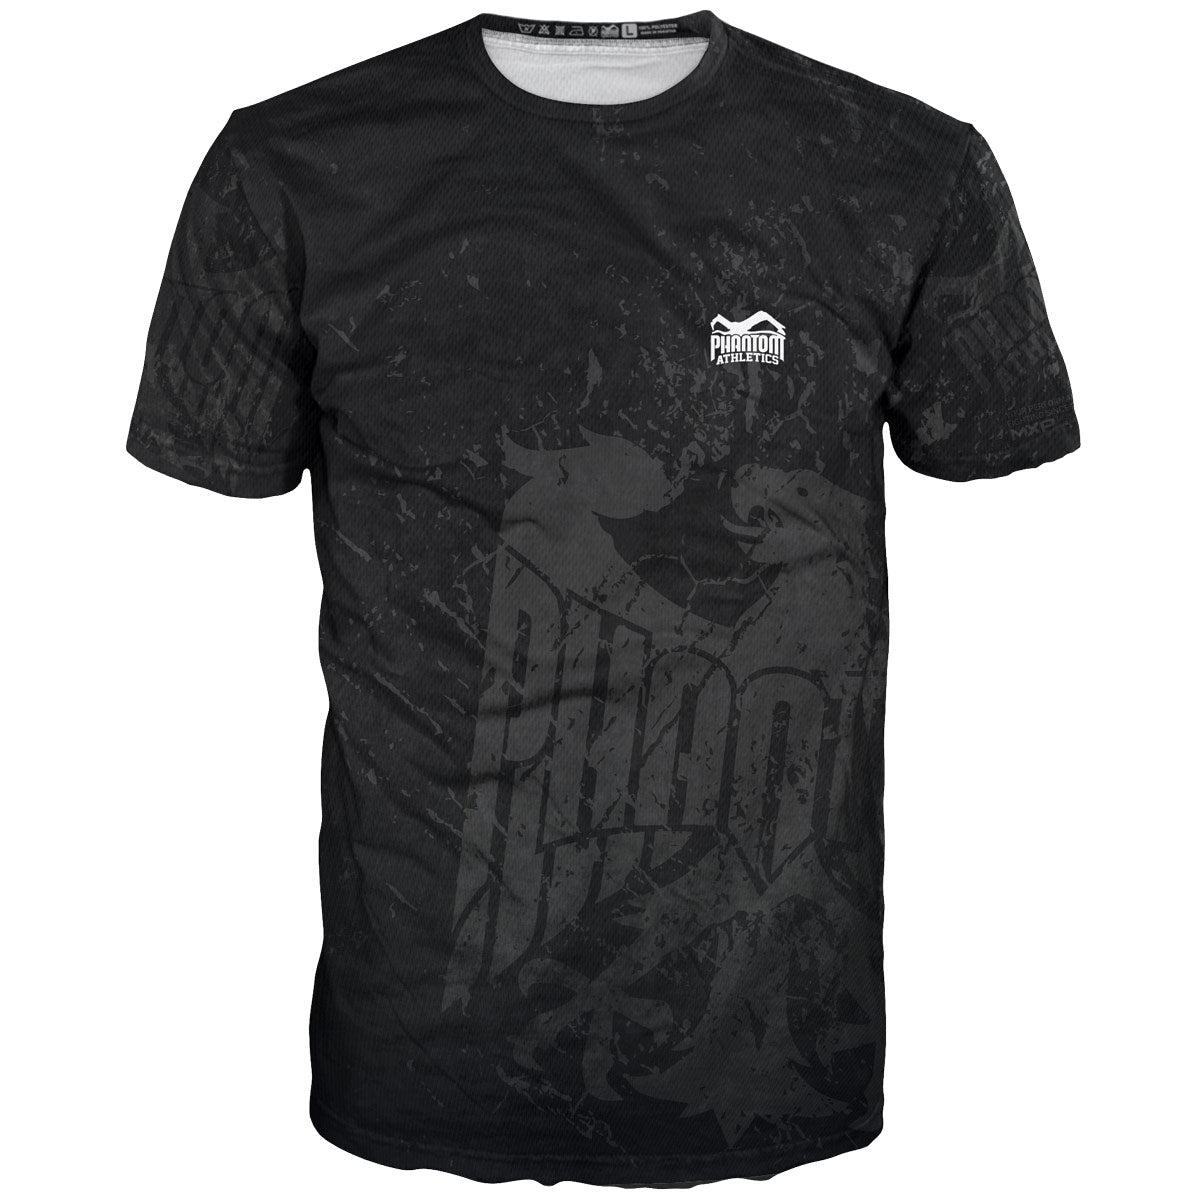 Das Phantom EVO Trainings Fight Shirt  im Team Germany Design. Mit Deutschland Adler und "Never Back Down" Schriftzug. Ideal für deinen Kamfpsport, wie MMA, Muay Thai, Ringen, BJJ oder Kickboxen.